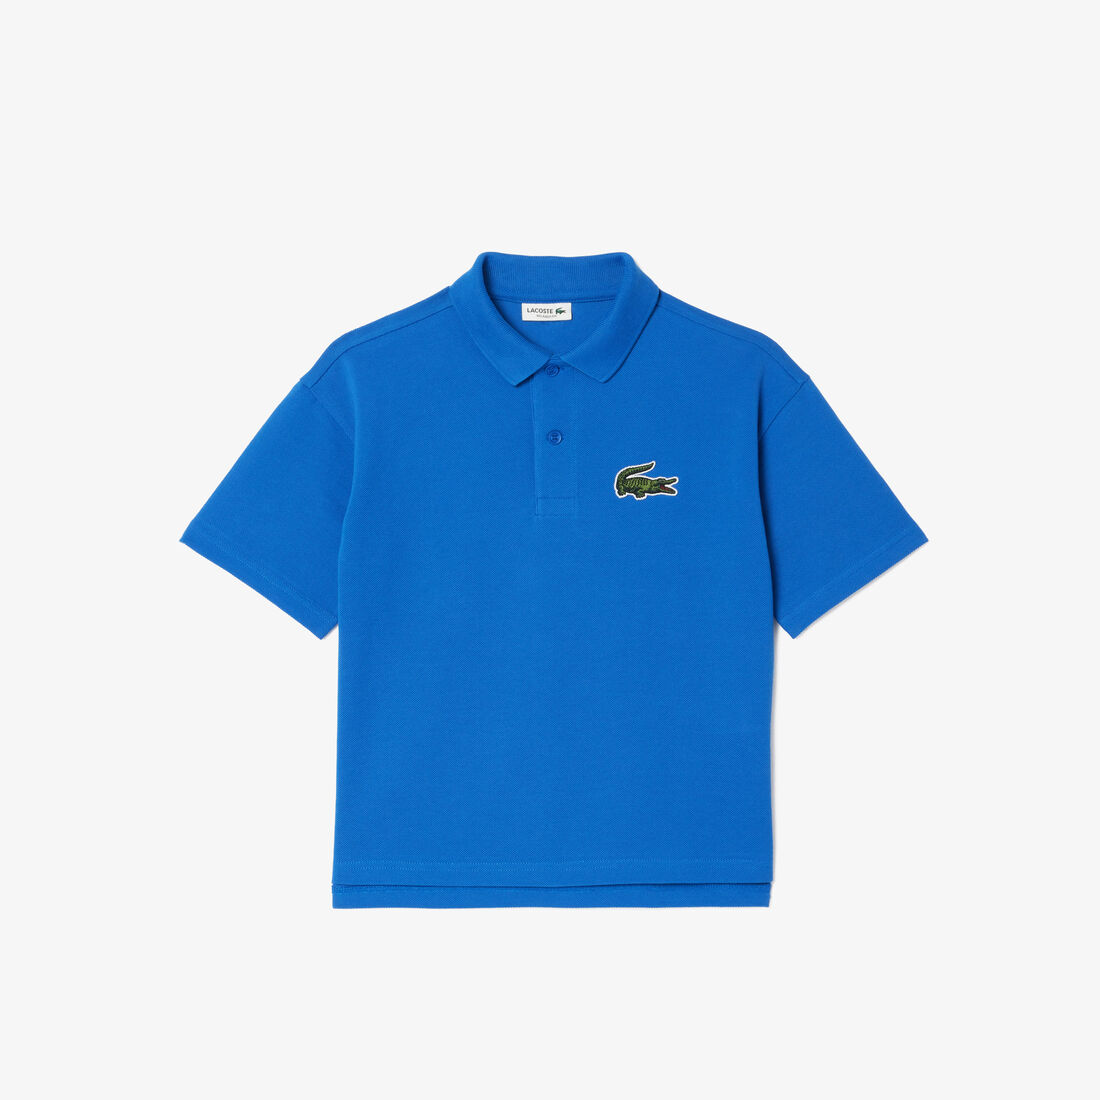 Cotton Pique Polo Shirt - PJ1259-00-IXW